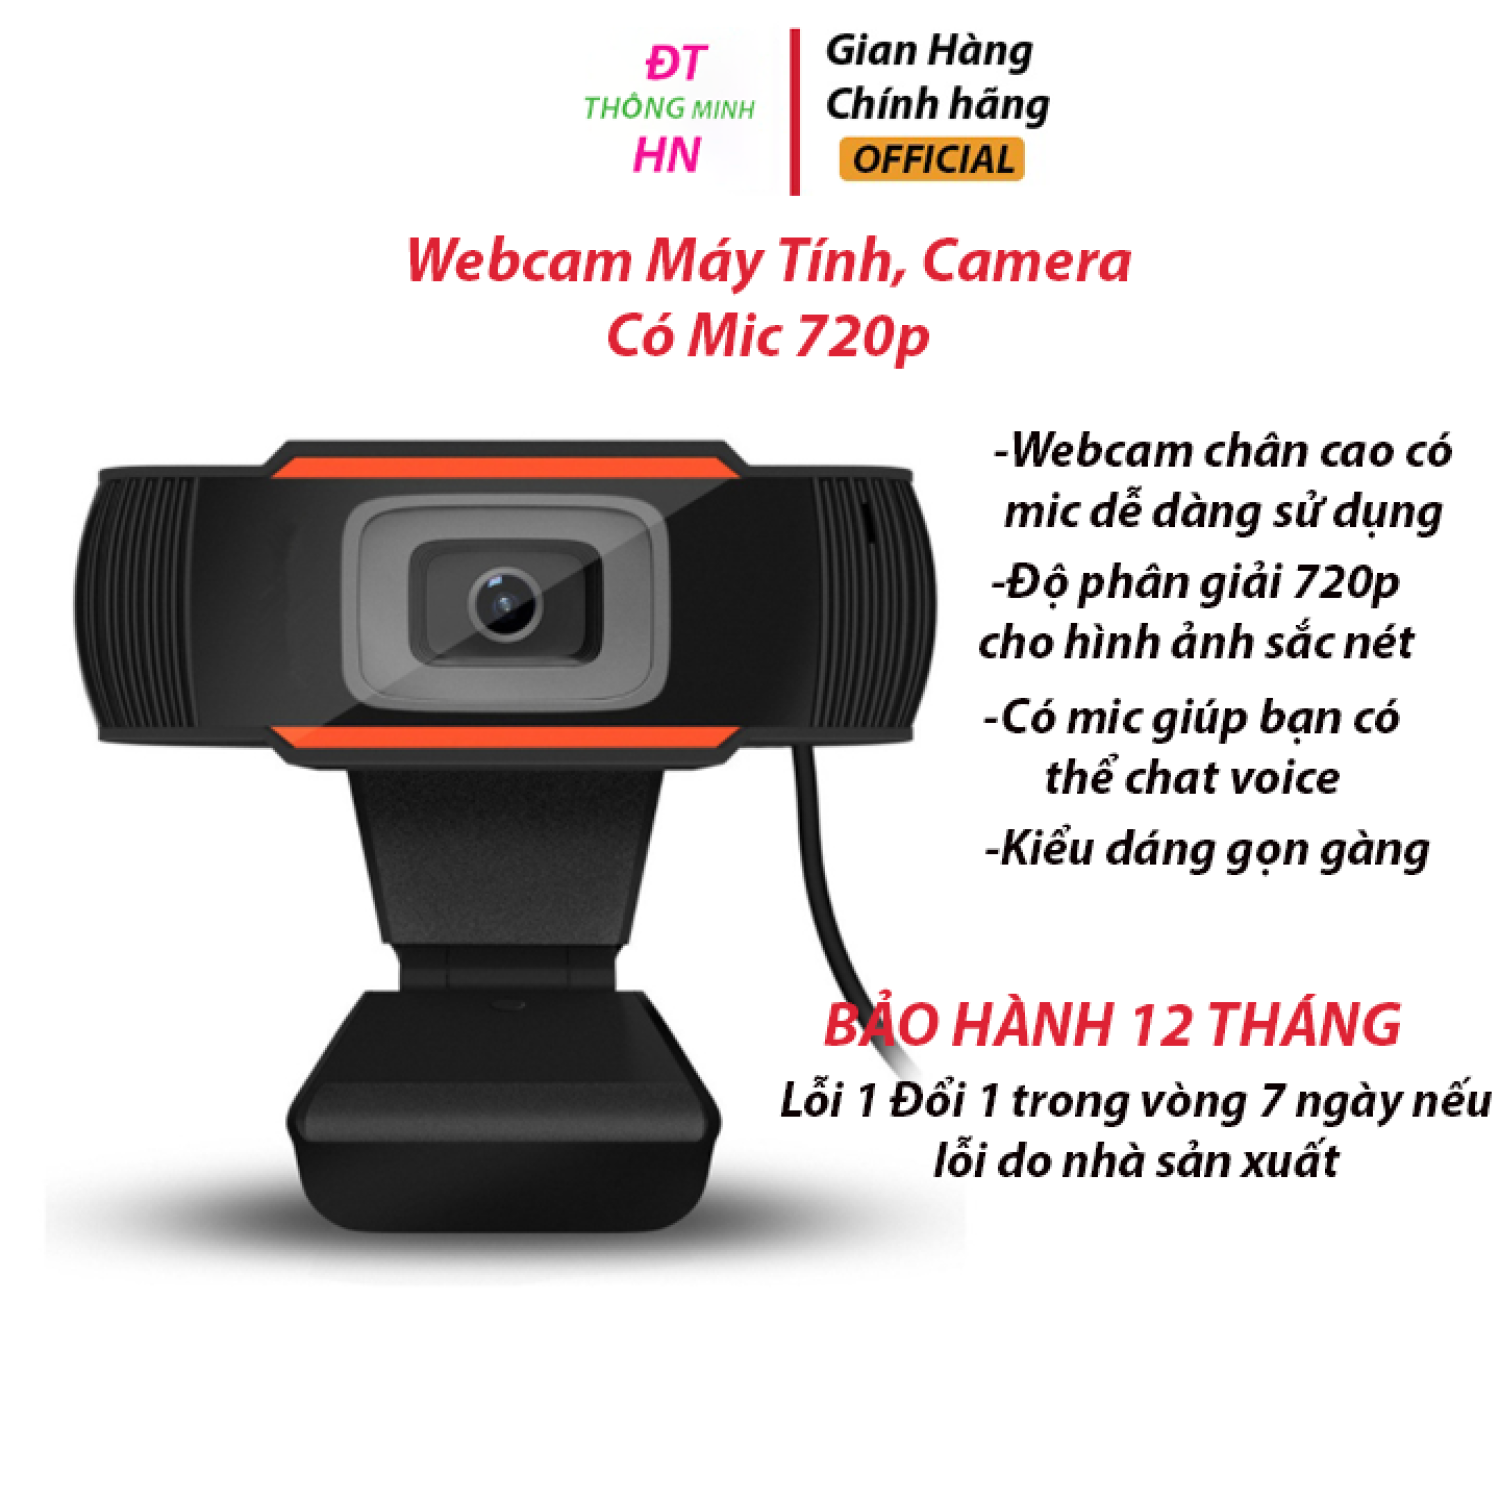 (lᴏại 1)Webcam Máy Tính, Camera Có Mic 720p Cho Laptop Học Online Qua ZOOM, Trực Tuyến – Hội Họp – Gọi Video Hình Ảnh Sắc Nét